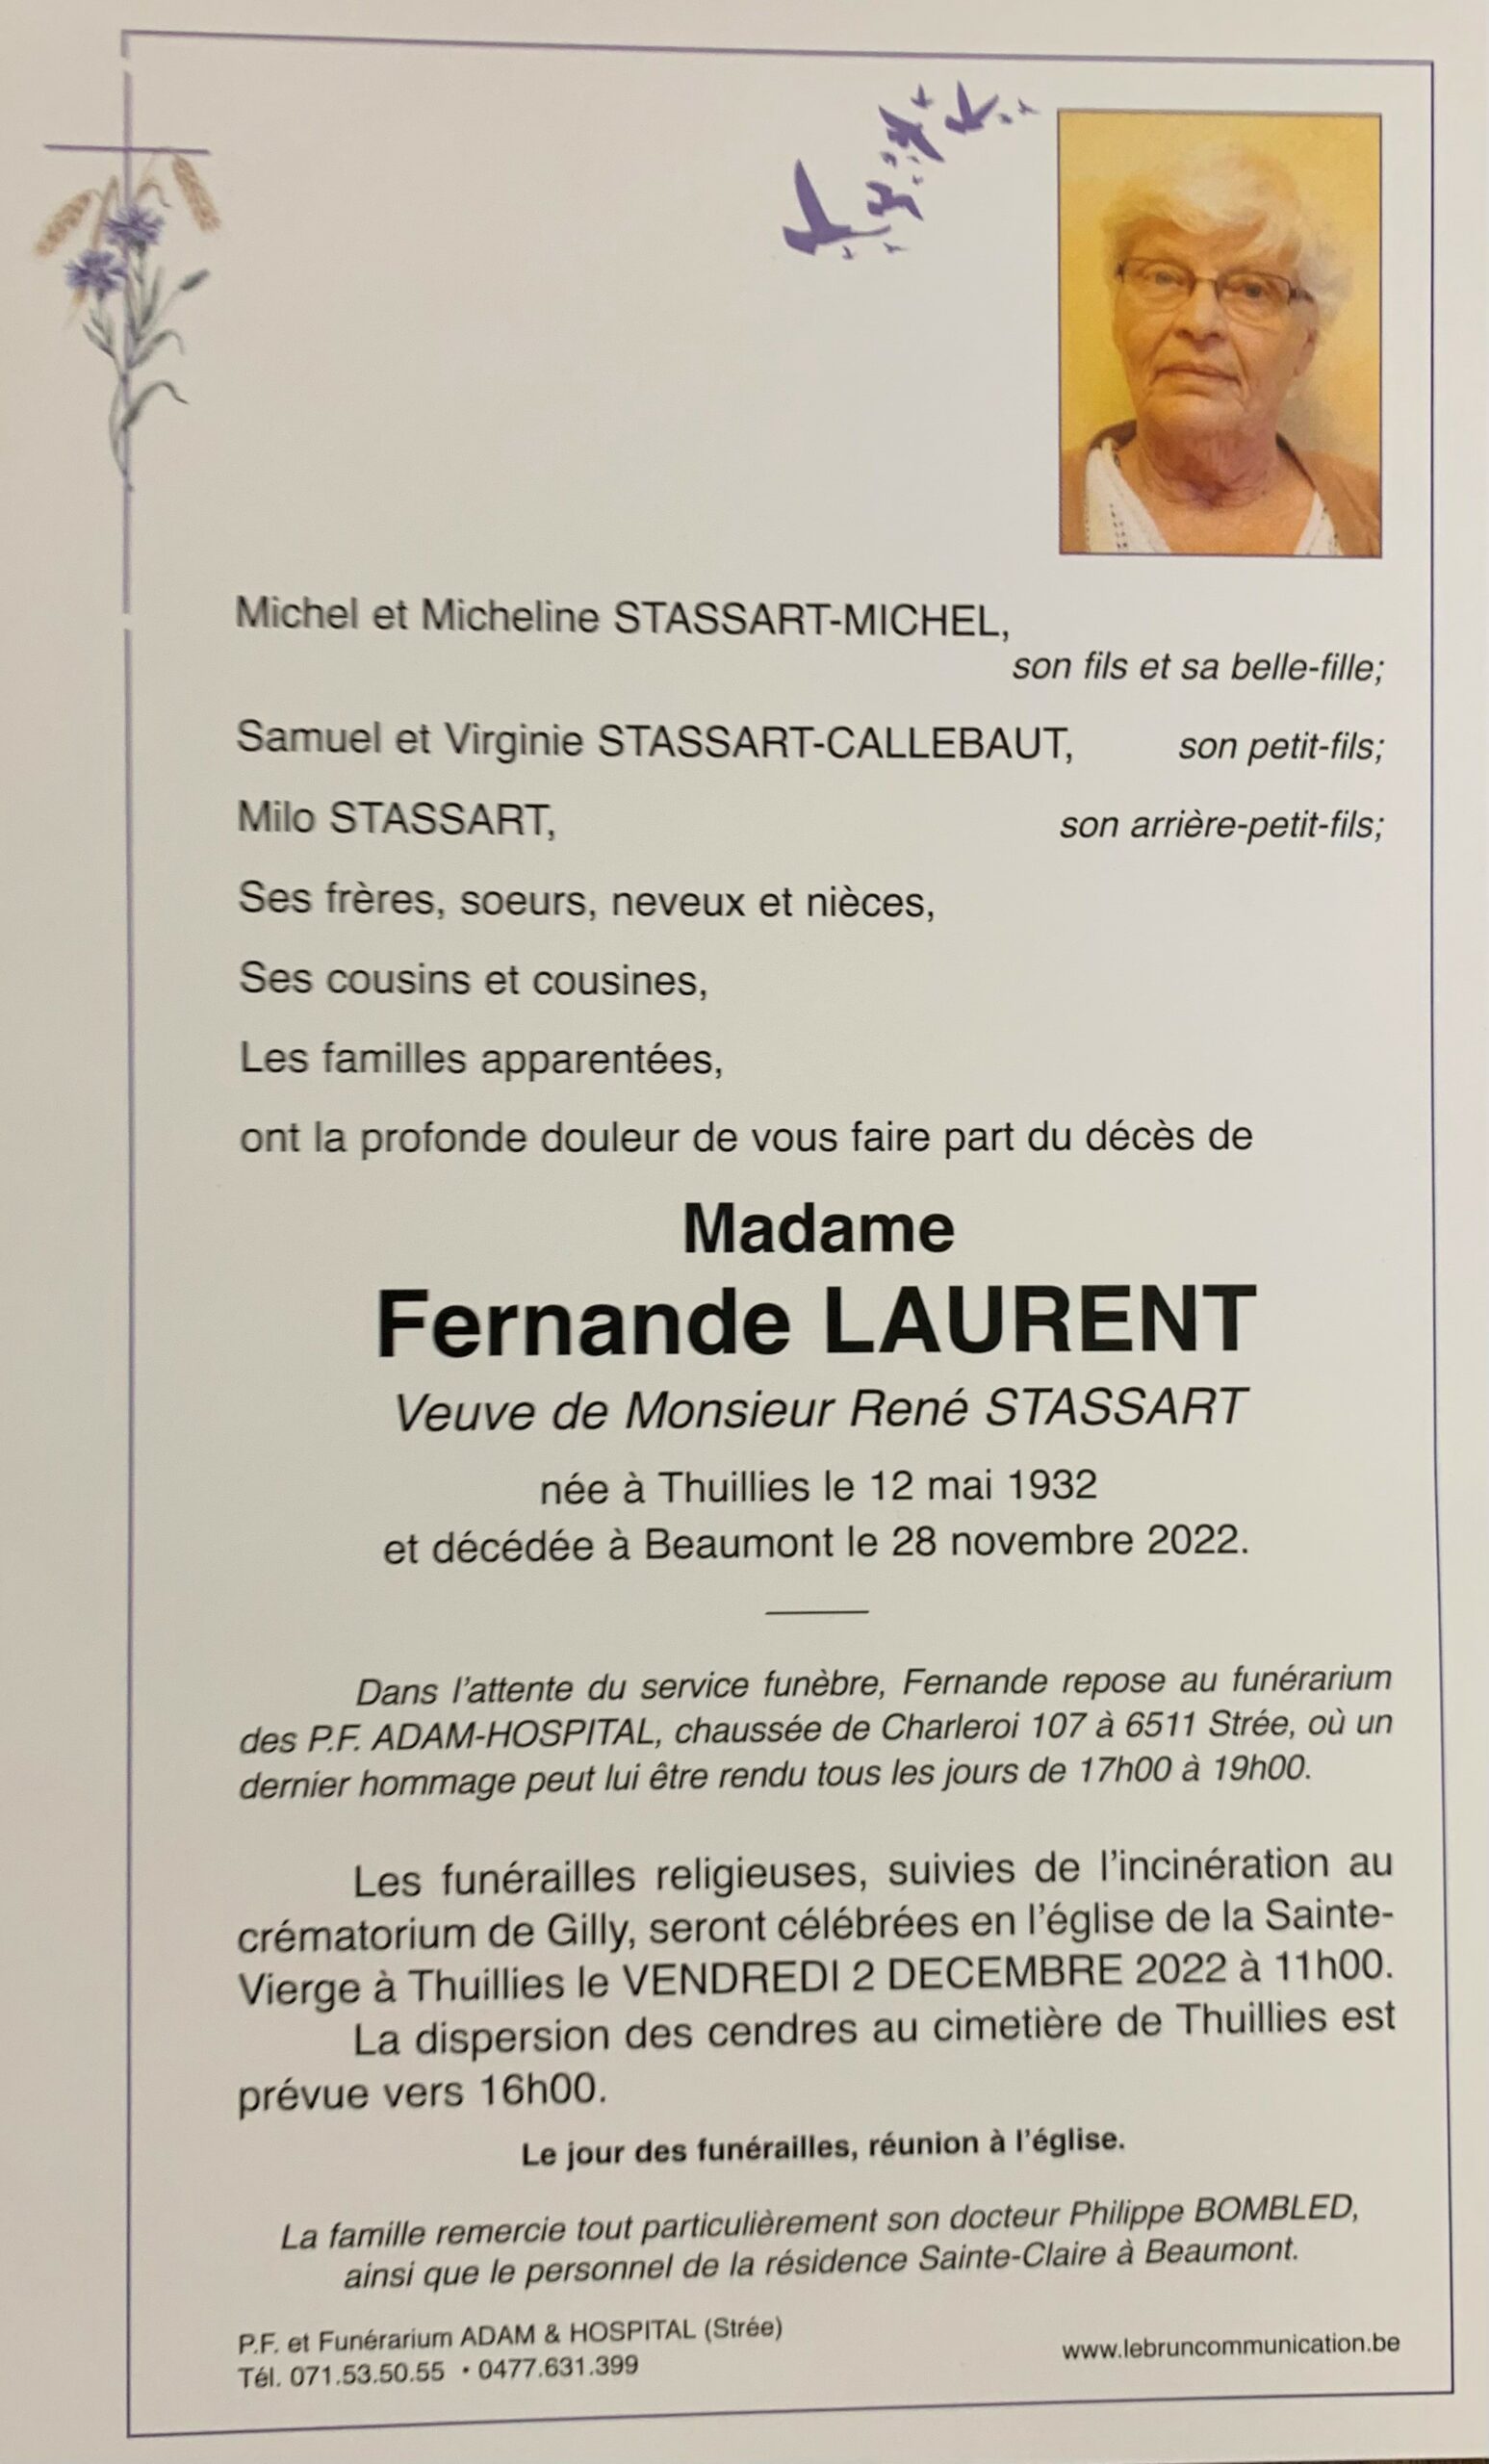 Madame Fernande LAURENT scaled | Funérailles Adam Hospital